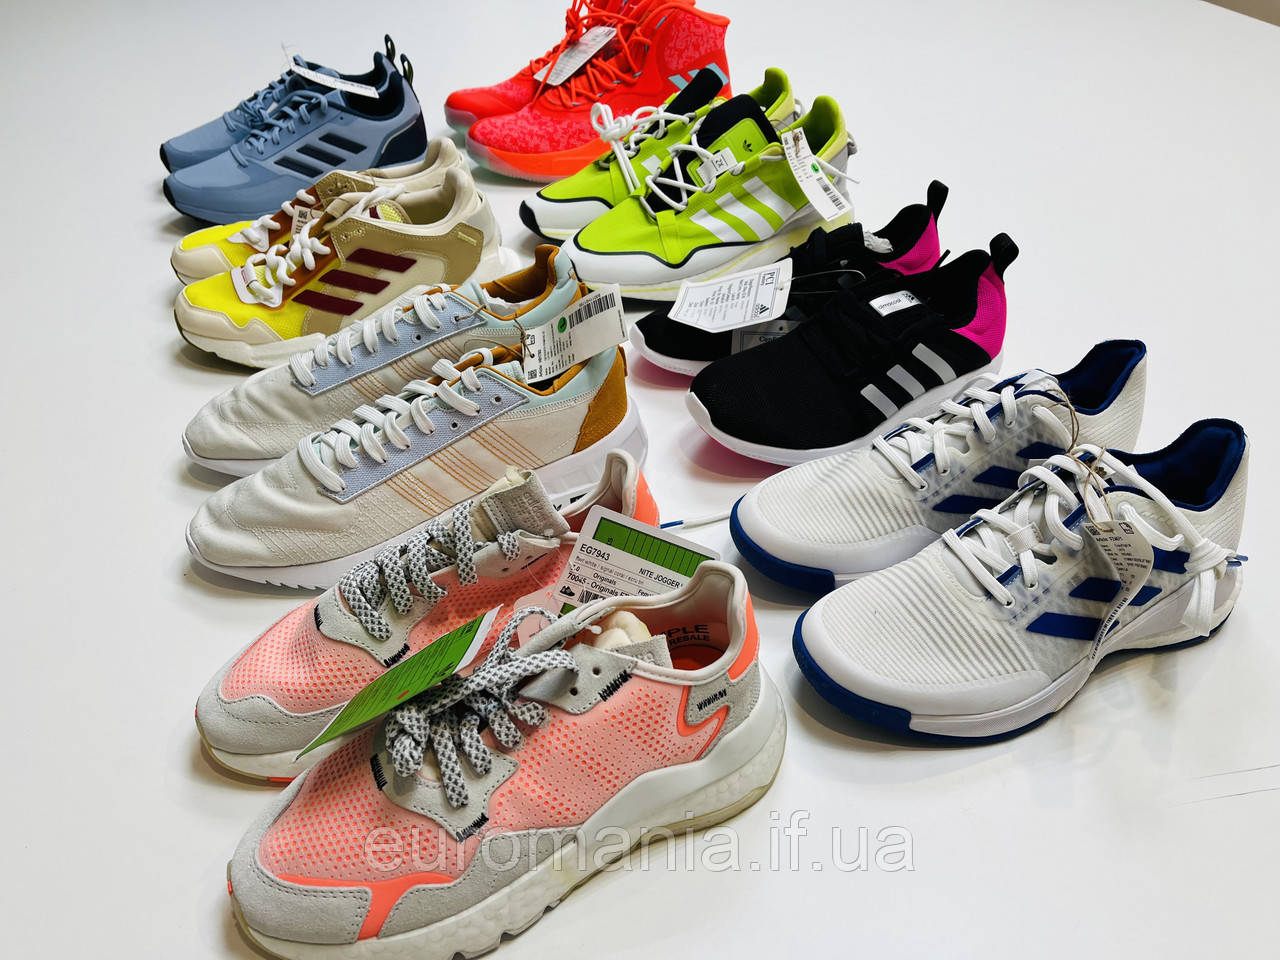 Взуття Adidas / New Balance Original Sample (У вайбер групі дешевше)